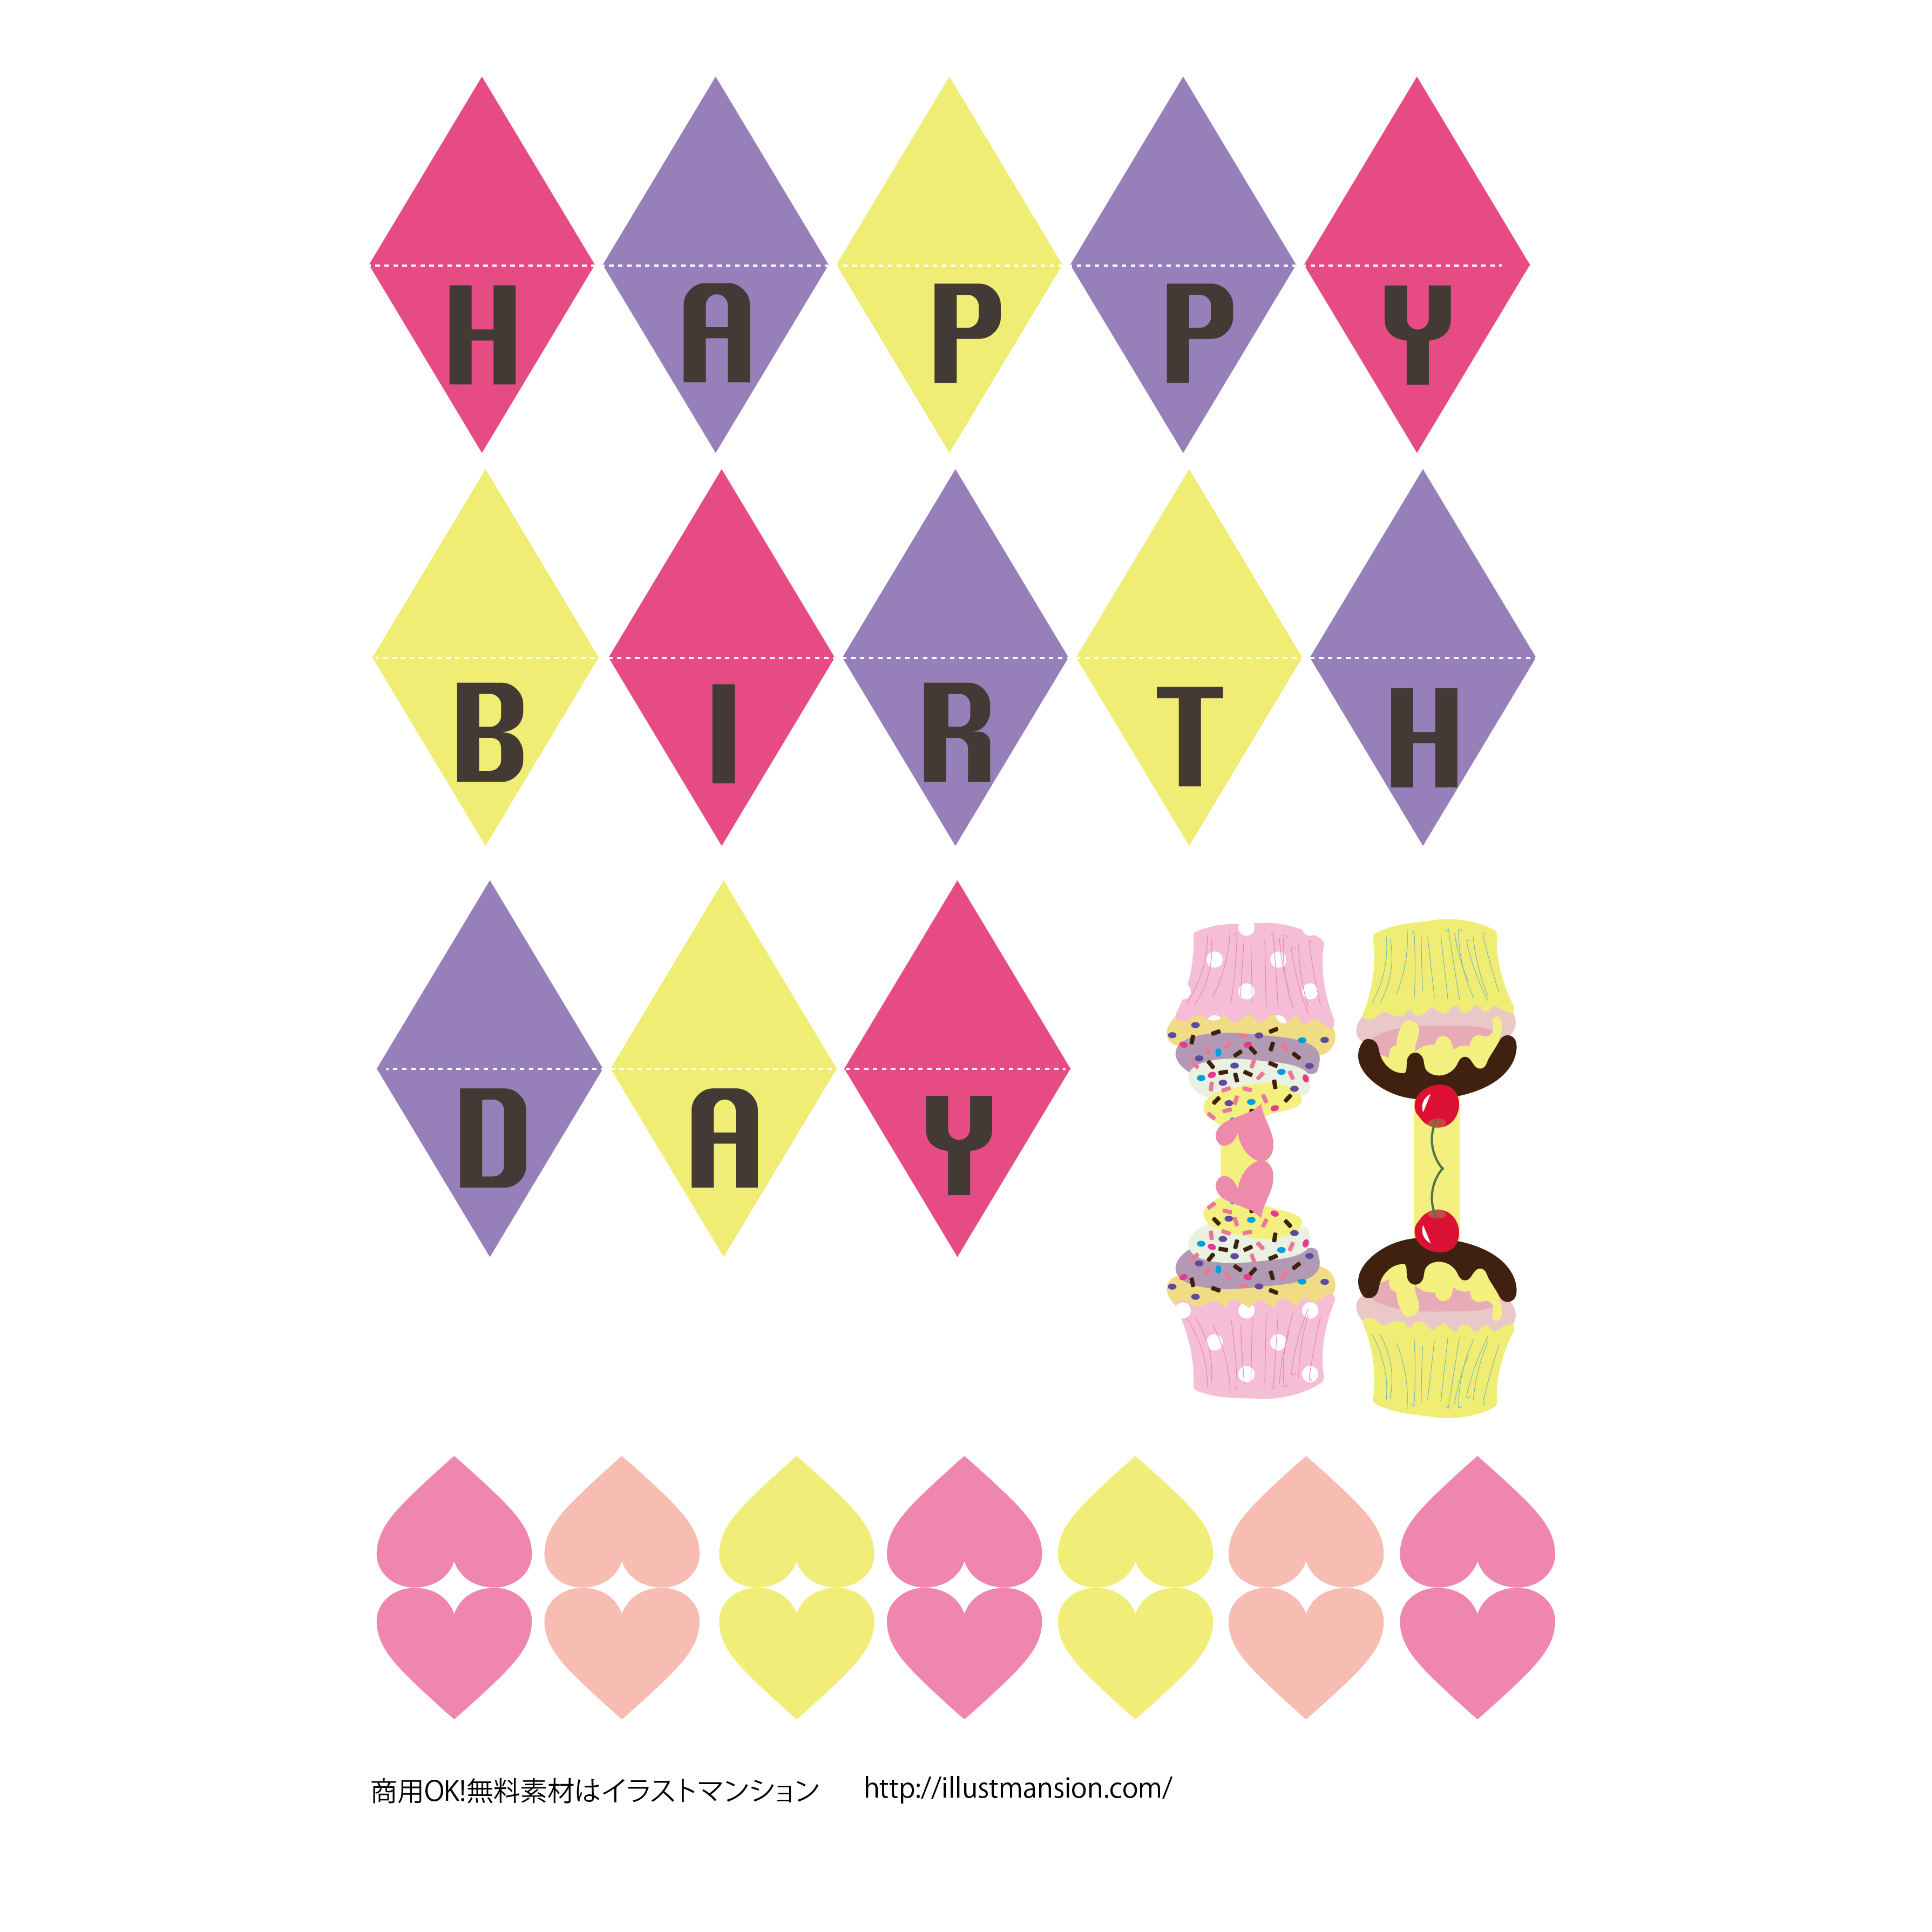 女の子用 カワイイ誕生日の飾り ガーランド 工作系イラスト素材